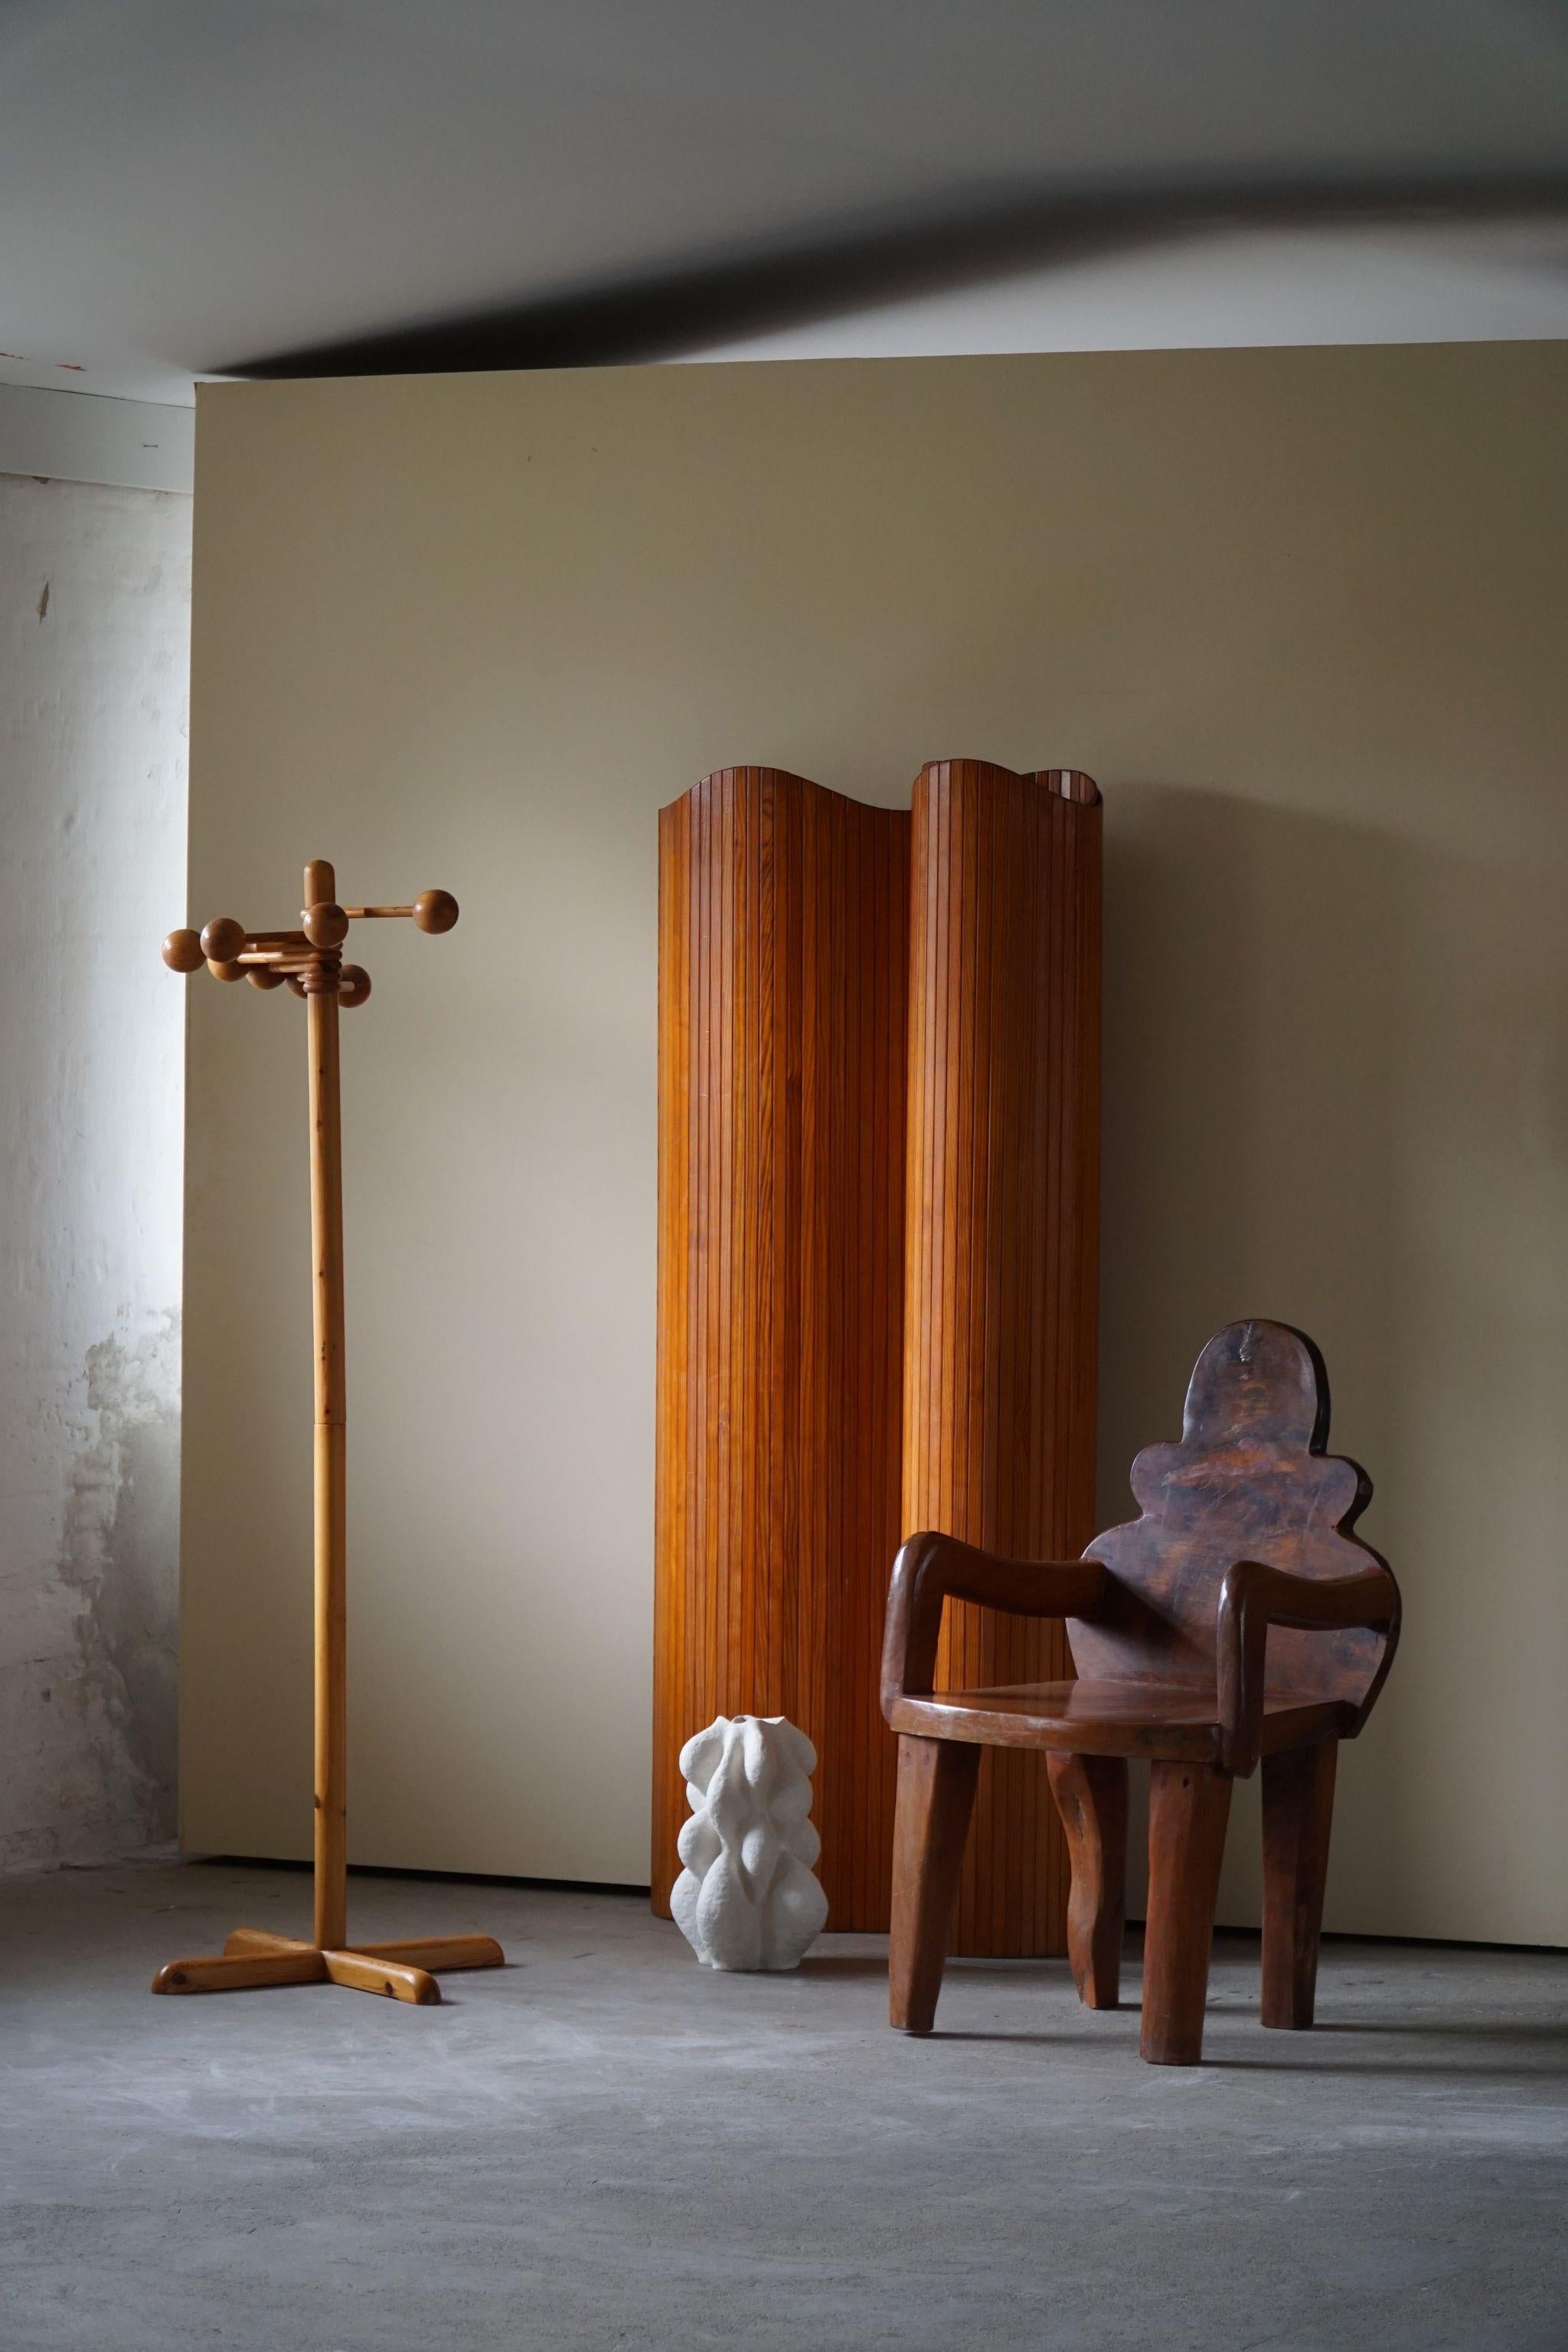 Ein fantastischer einzigartiger Wabi-Sabi-Stuhl, der aus einem großen Holzstück geschnitzt wurde. Gebrauchsspuren. Handgefertigt von einem schwedischen Tischler in der Mitte des 20. Jahrhunderts.
Eine faszinierende organische Form und eine